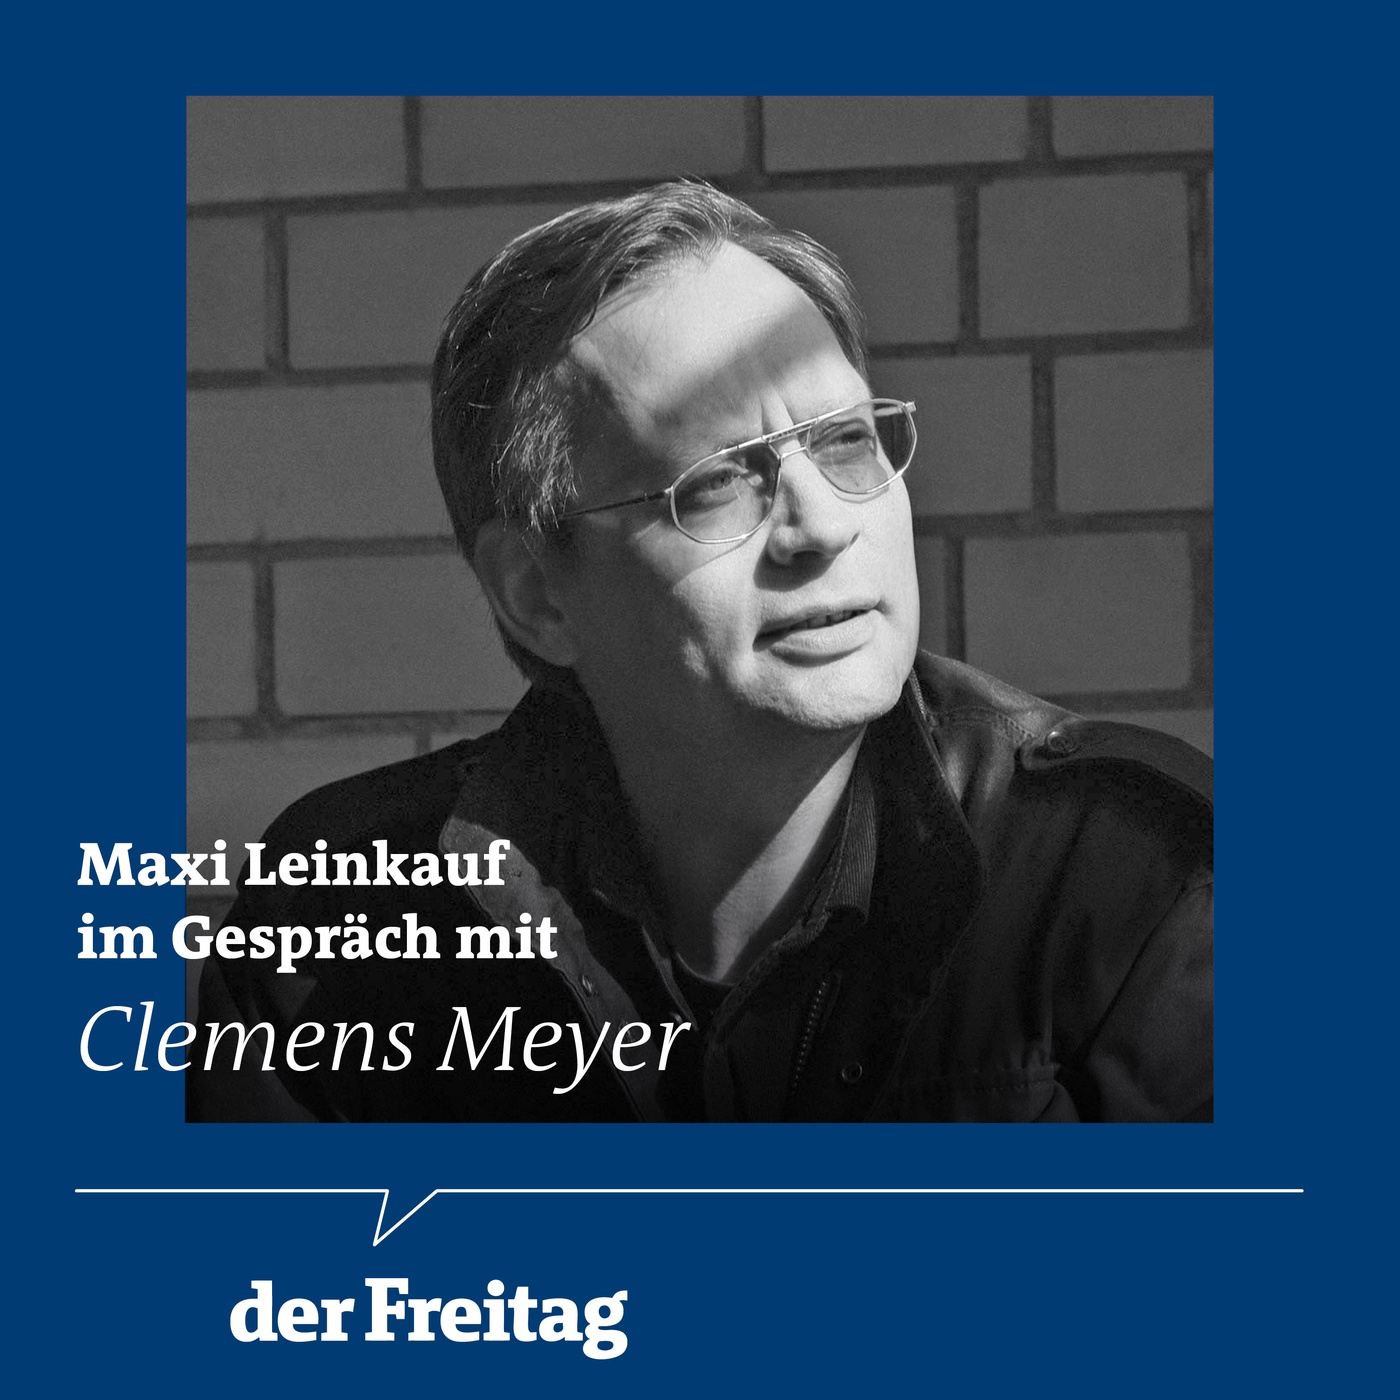 Clemens Meyer im Gespräch über Christa Wolf